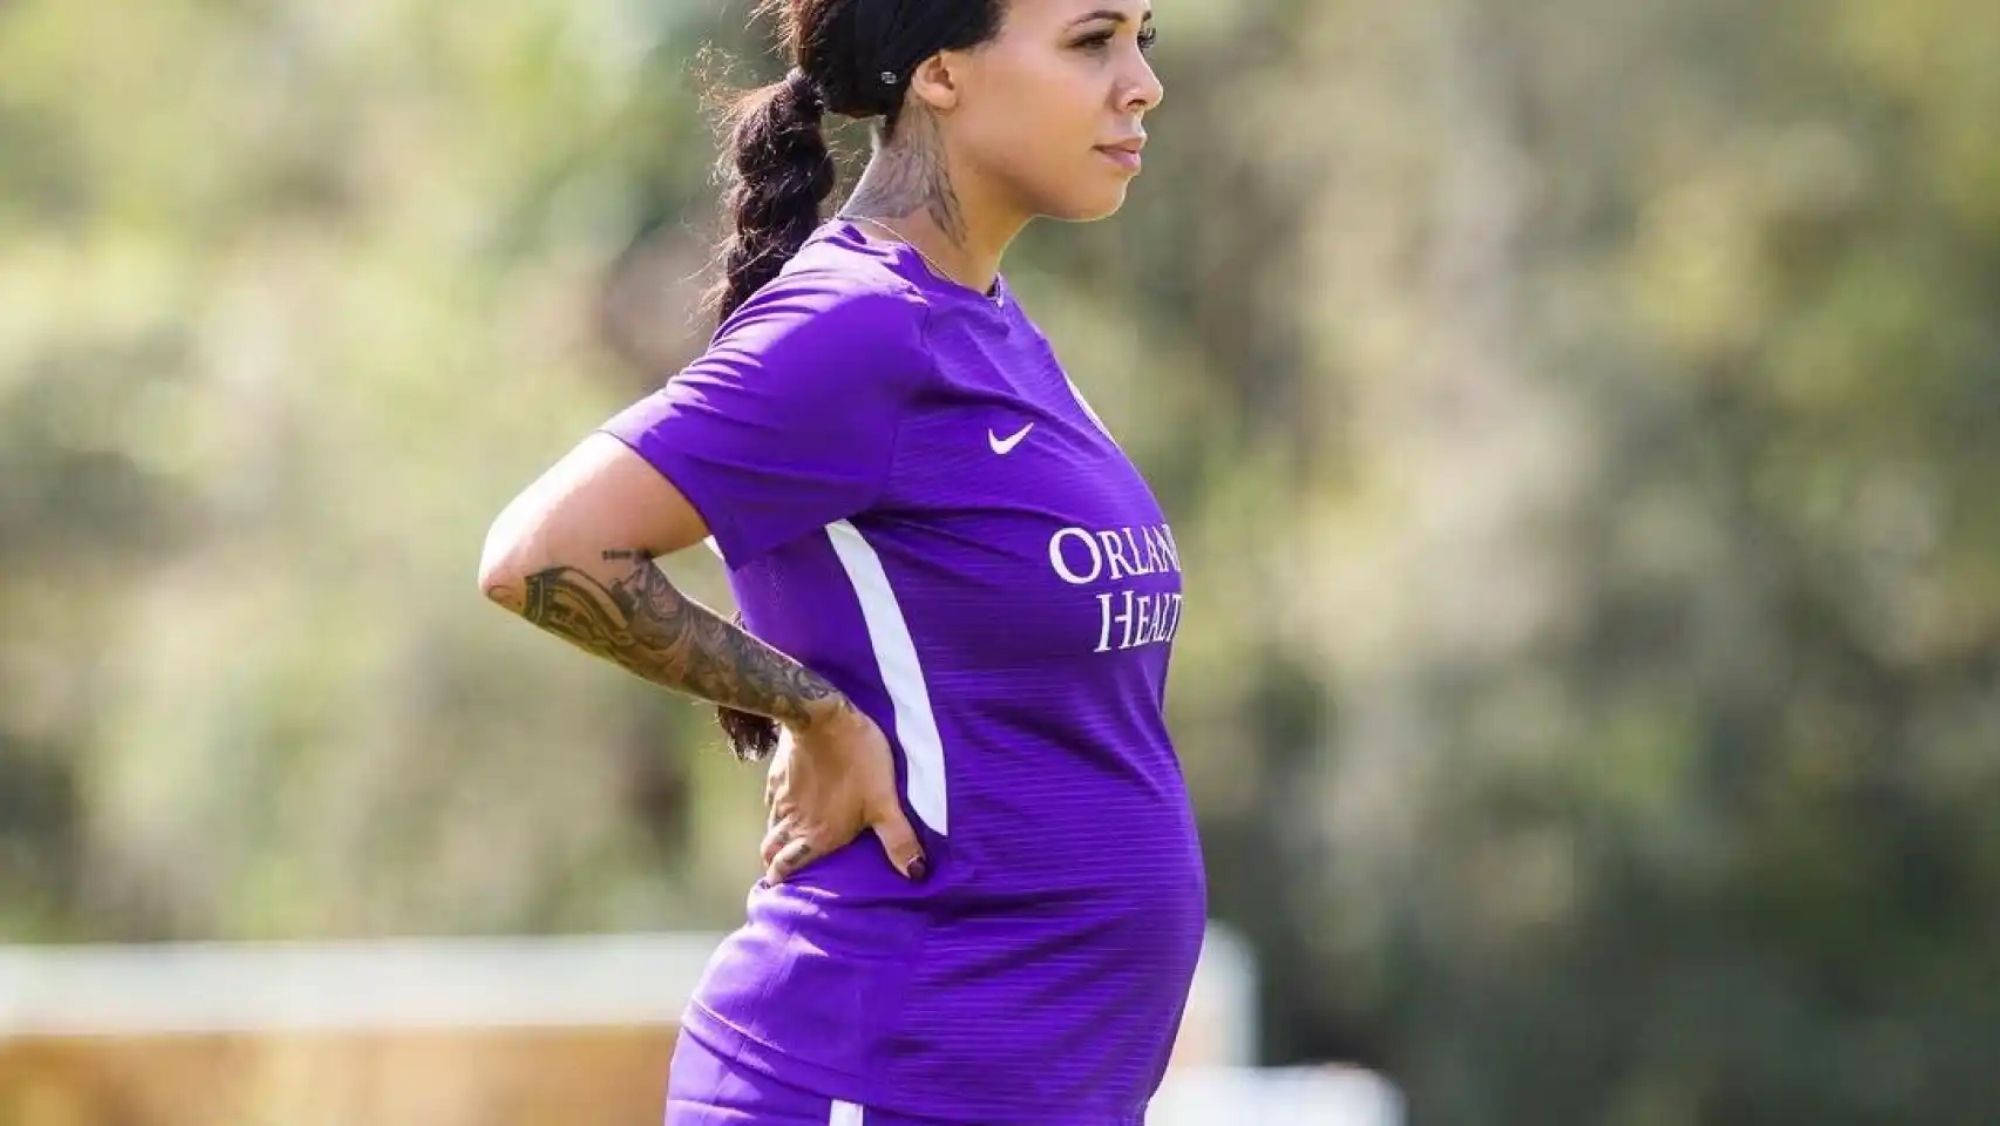 La futbolista Alex Morgan embarazada y entrenando